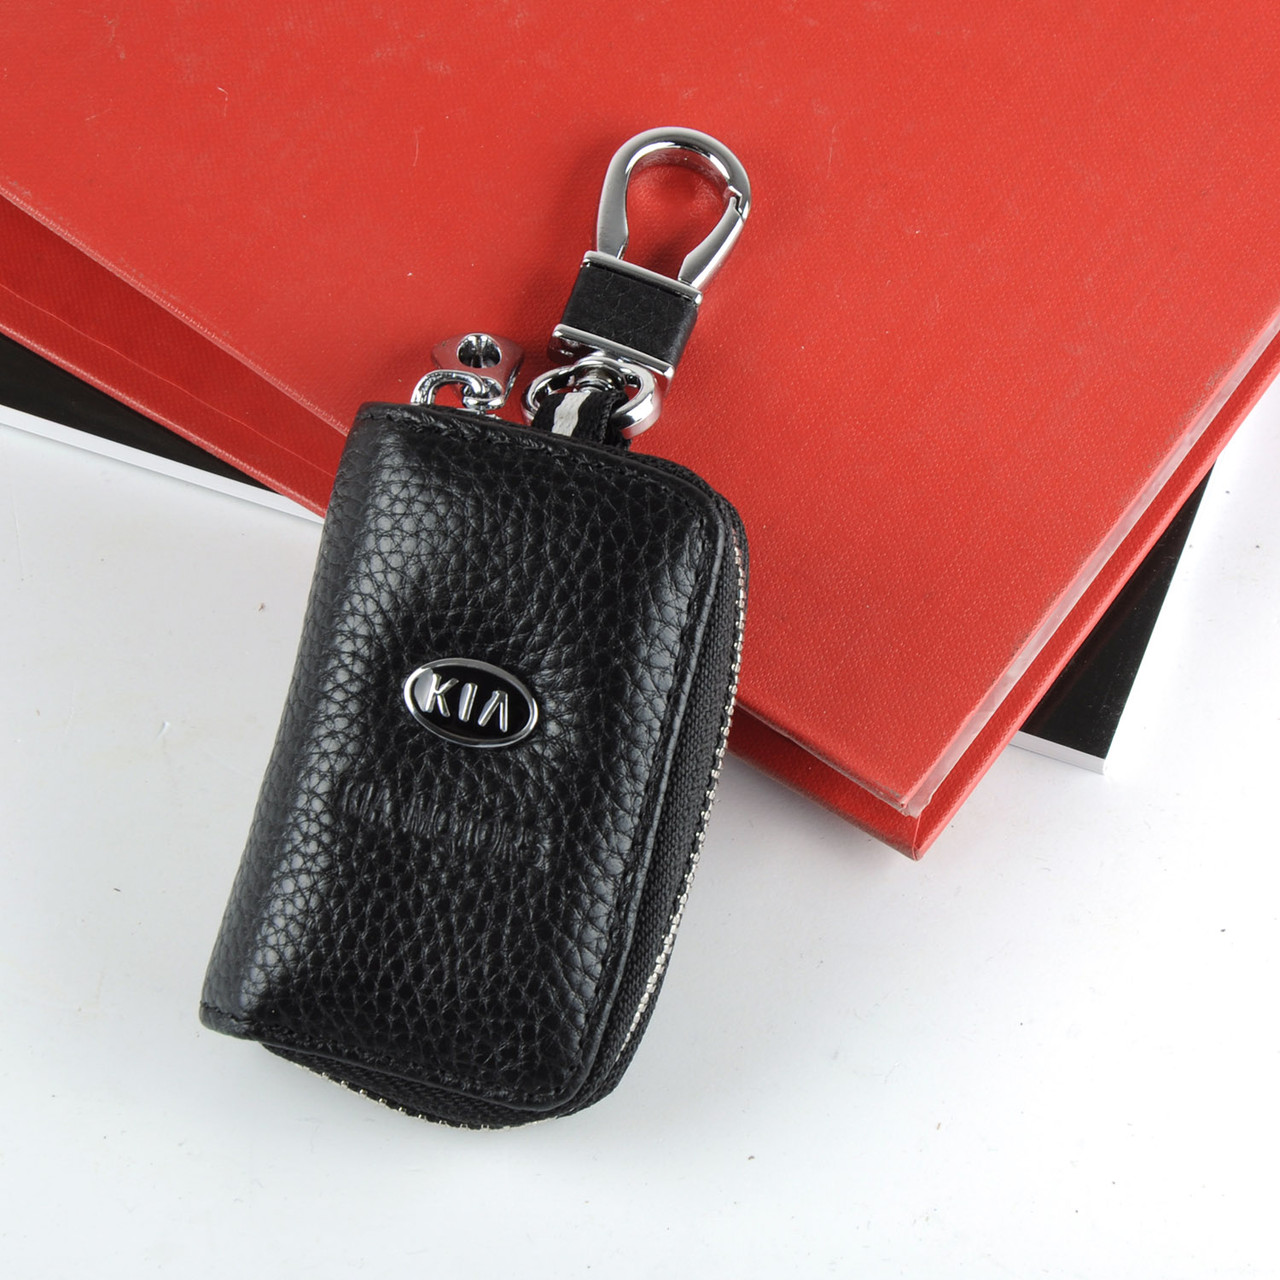 Ключниця з логотипом авто KIA, брелок Кіа